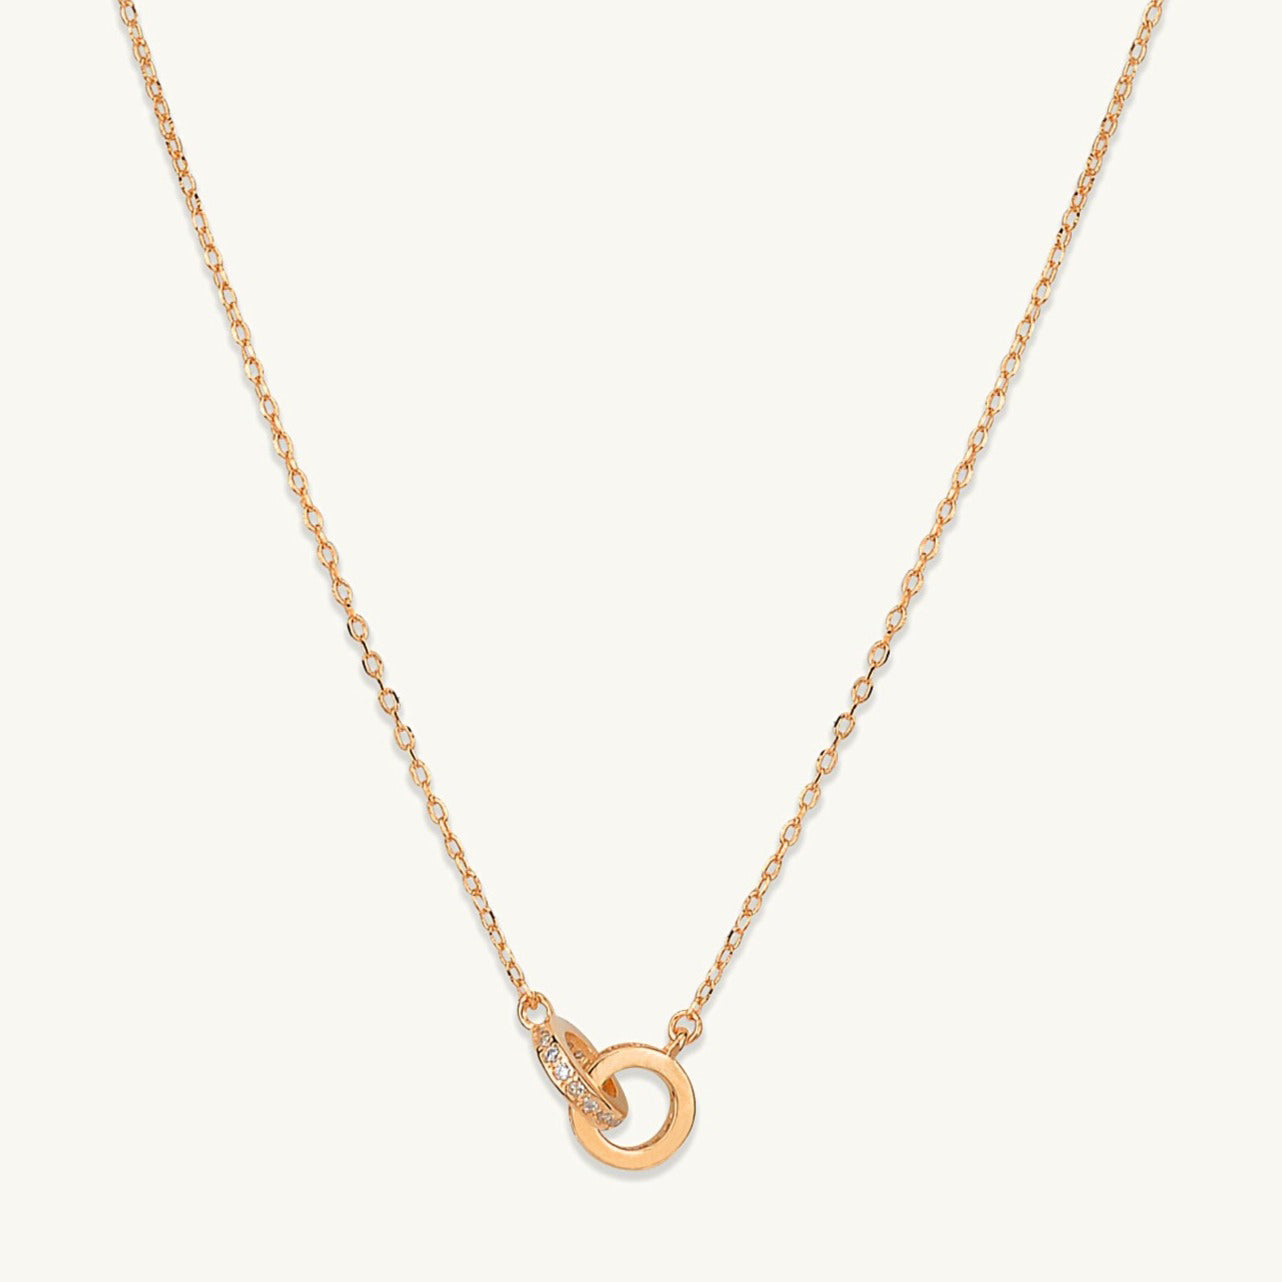 Bond Sapphire Chain Necklace